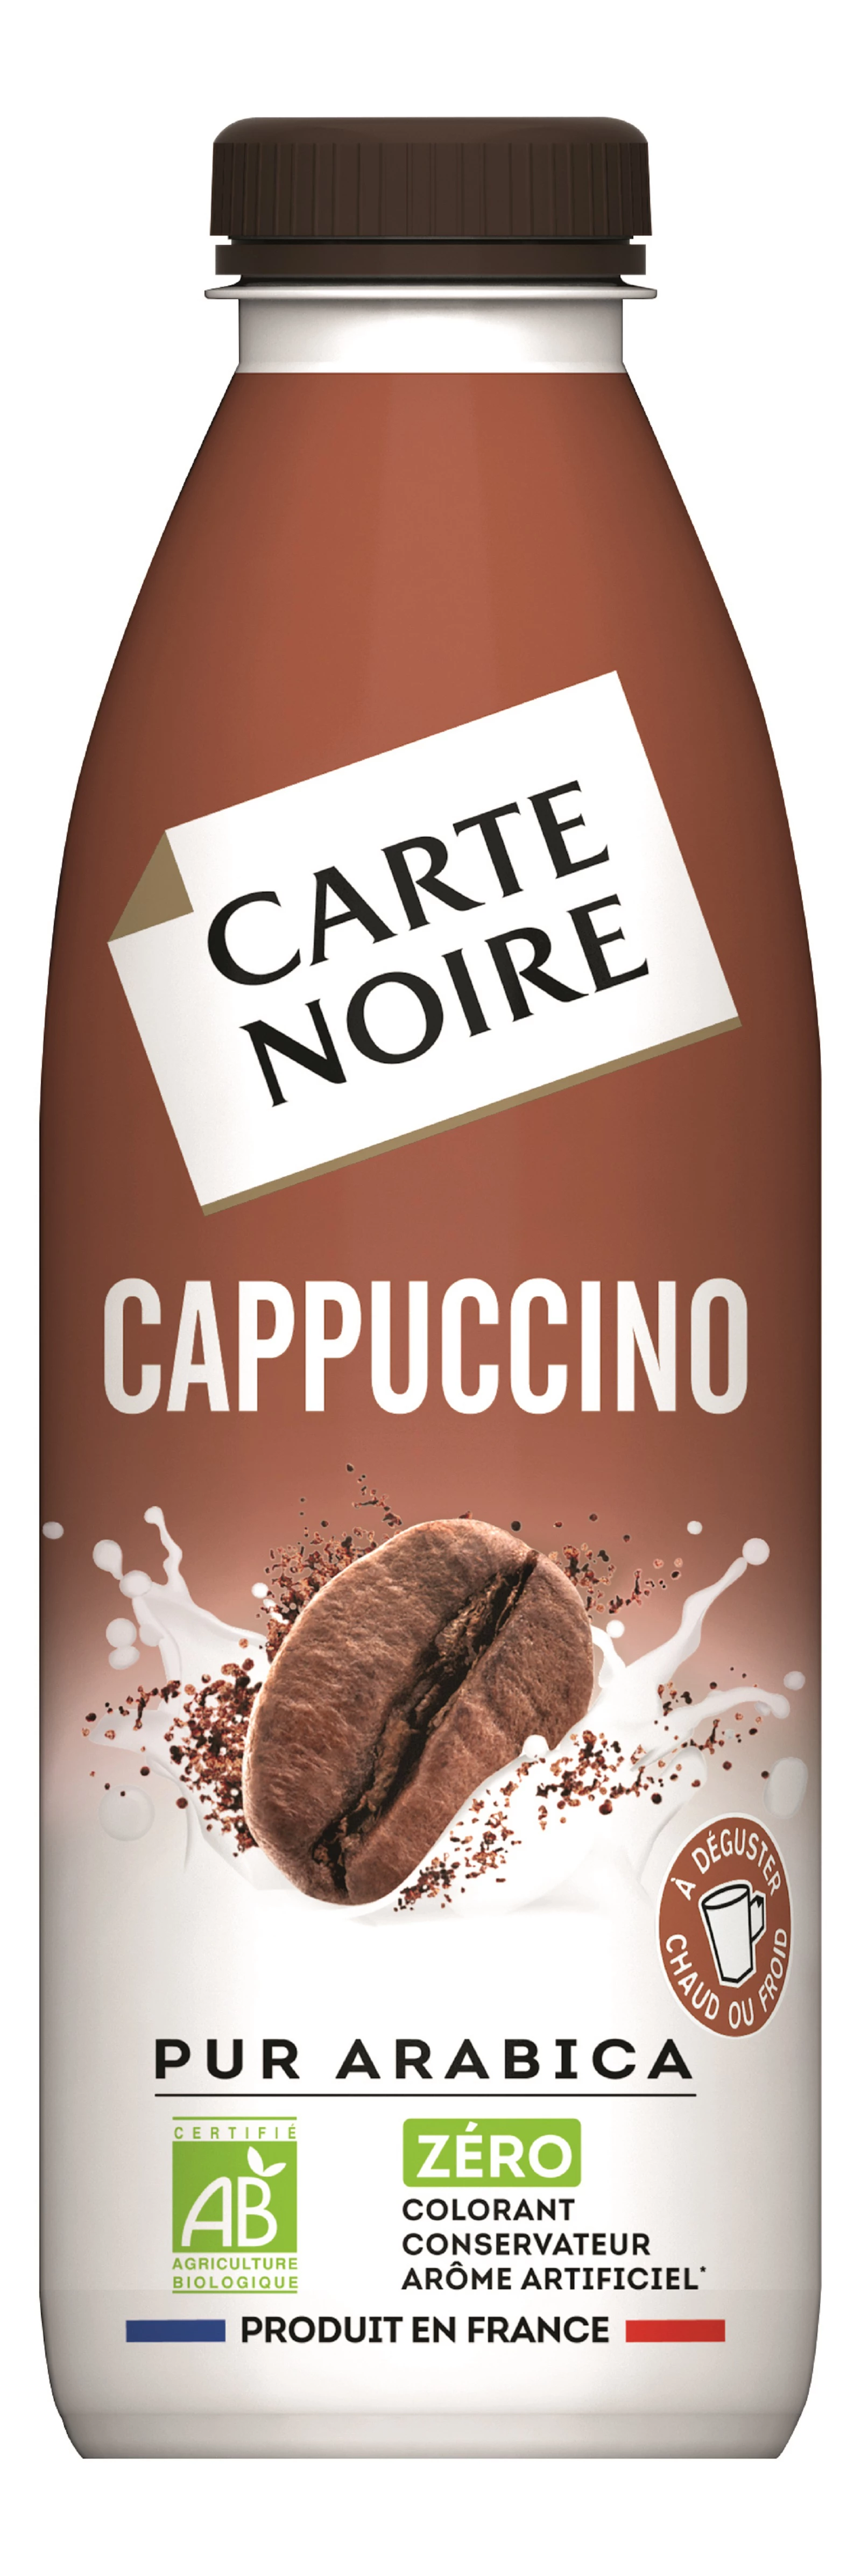 Mochaccino prêt à boire bouteille de 750 ml - CARTE NOIRE